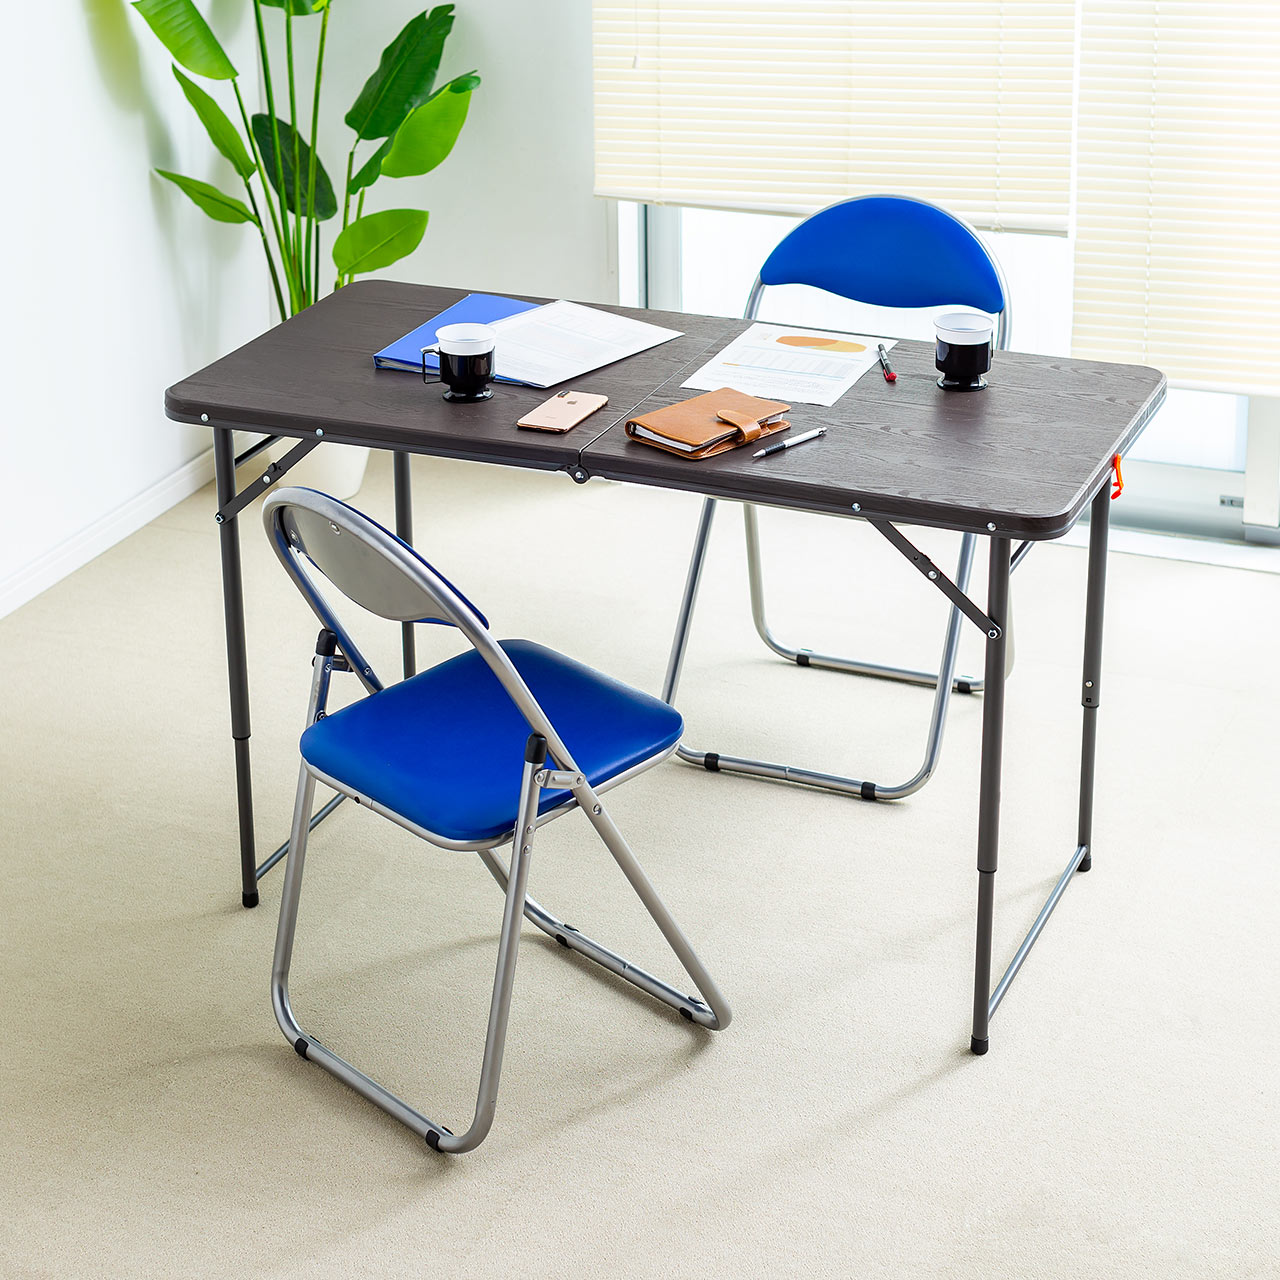 会議テーブル 折りたたみテーブル 省スペース W122cm D60cm 樹脂天板 高さ変更 簡単組立 持ち運び 取っ手付き ブラウン 100-FD014M